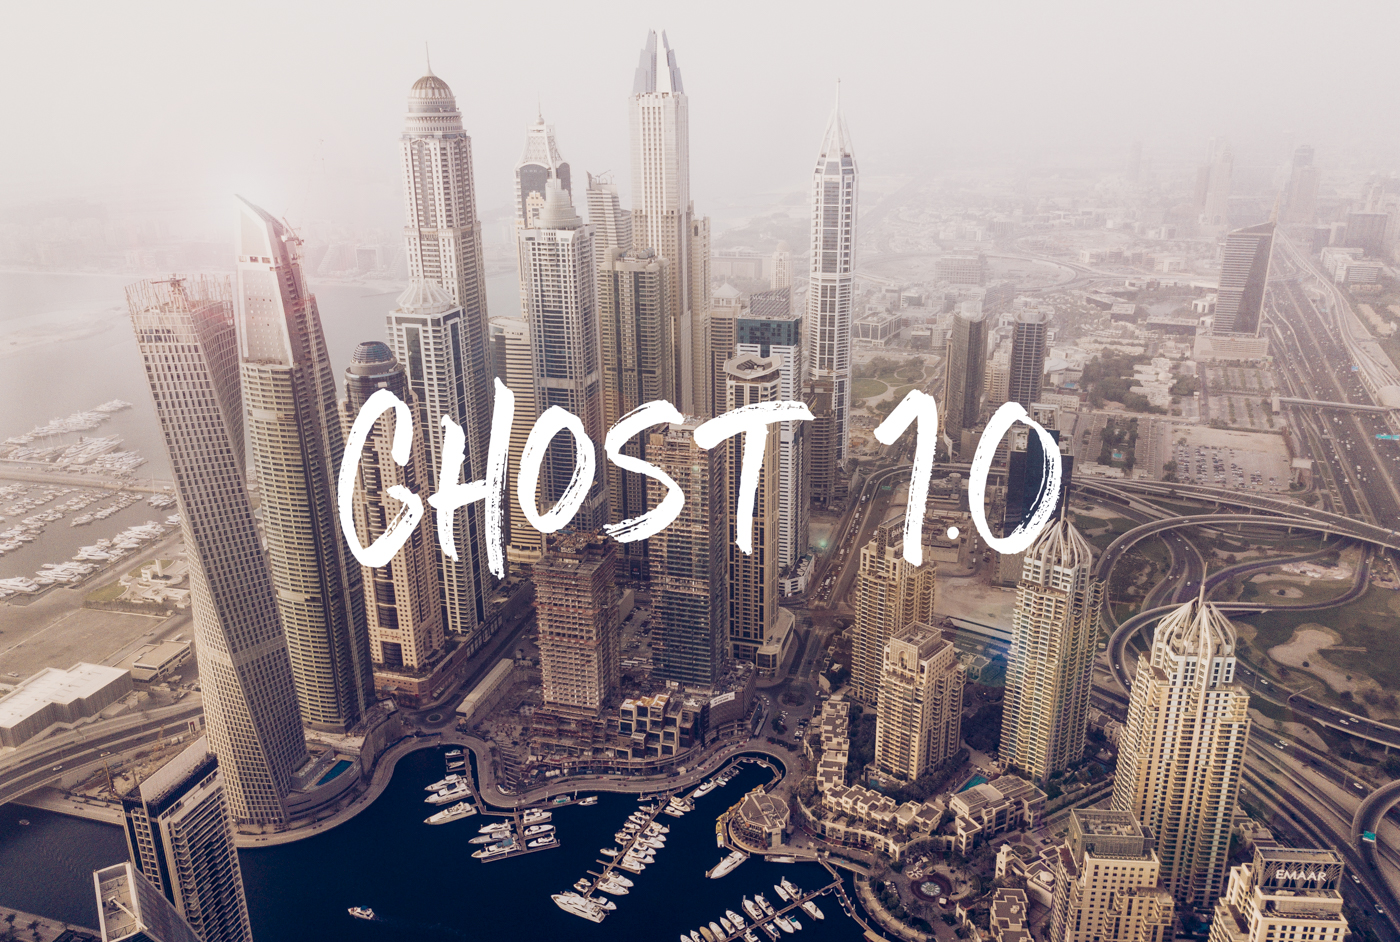 Ghost正式发布Ghost1.0 全新强大编辑器提升写作乐趣和效率